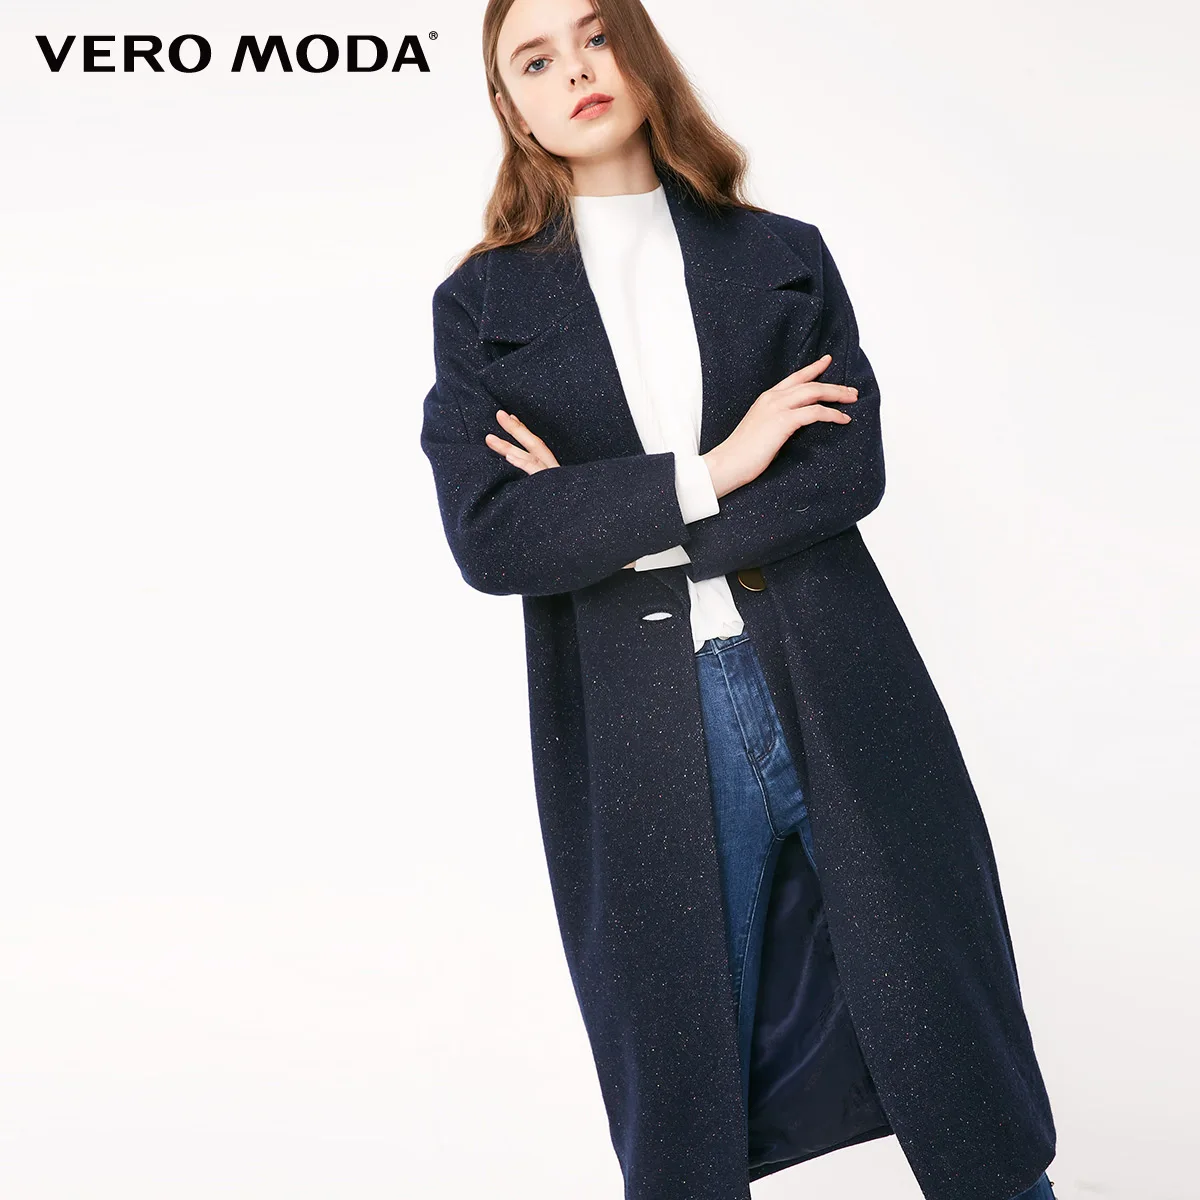 Vero Moda пальто женское Женское шерстяное пальто на пуговицах с отворотом и укороченным рукавом | 318327509 - Цвет: Navy mel.